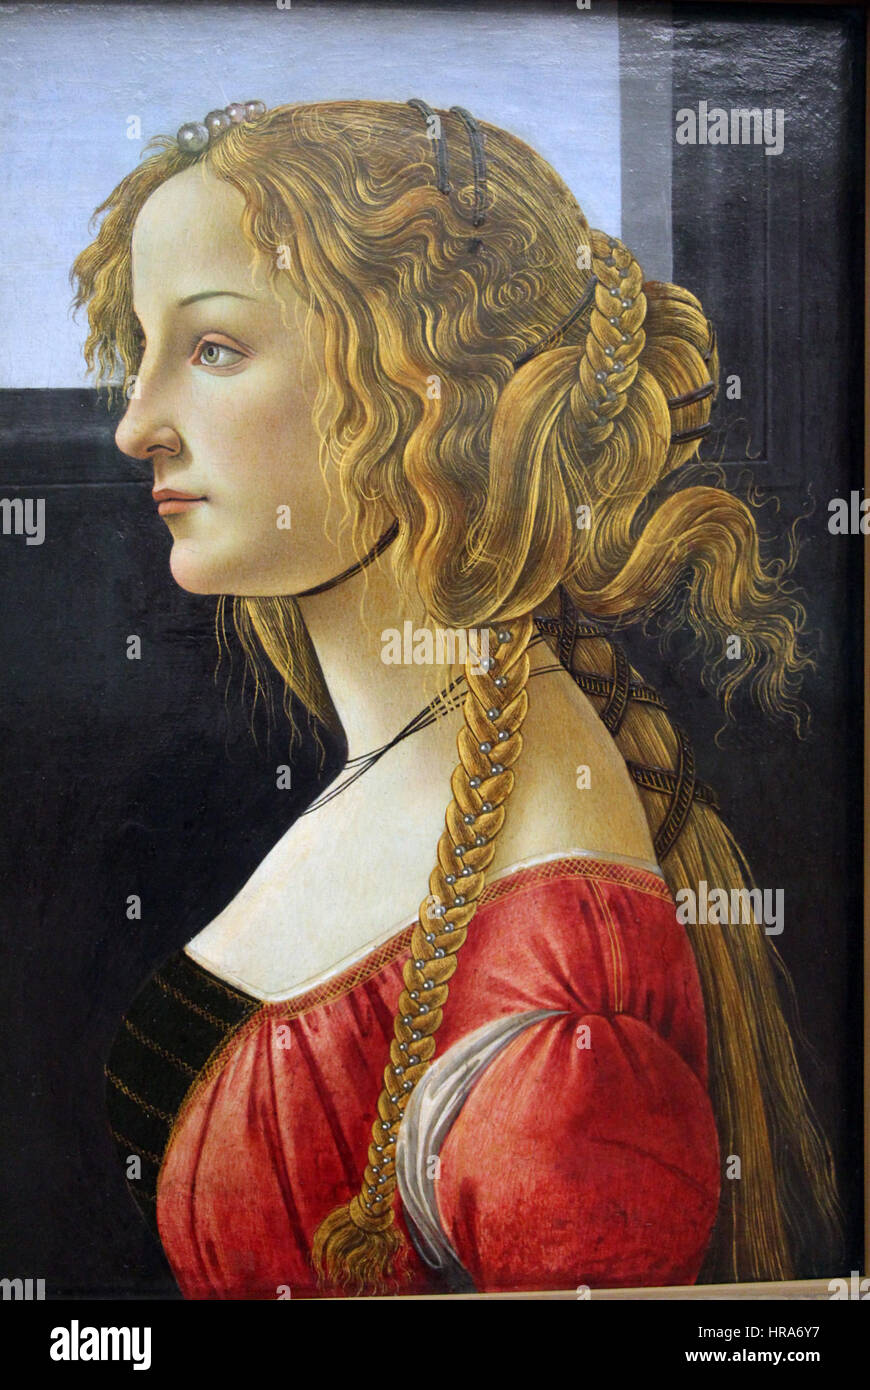 Sandro botticelli, ritratto di profilo di una ragazza, forse simonetta vespucci, 1460-65 ca. 02 Stock Photo